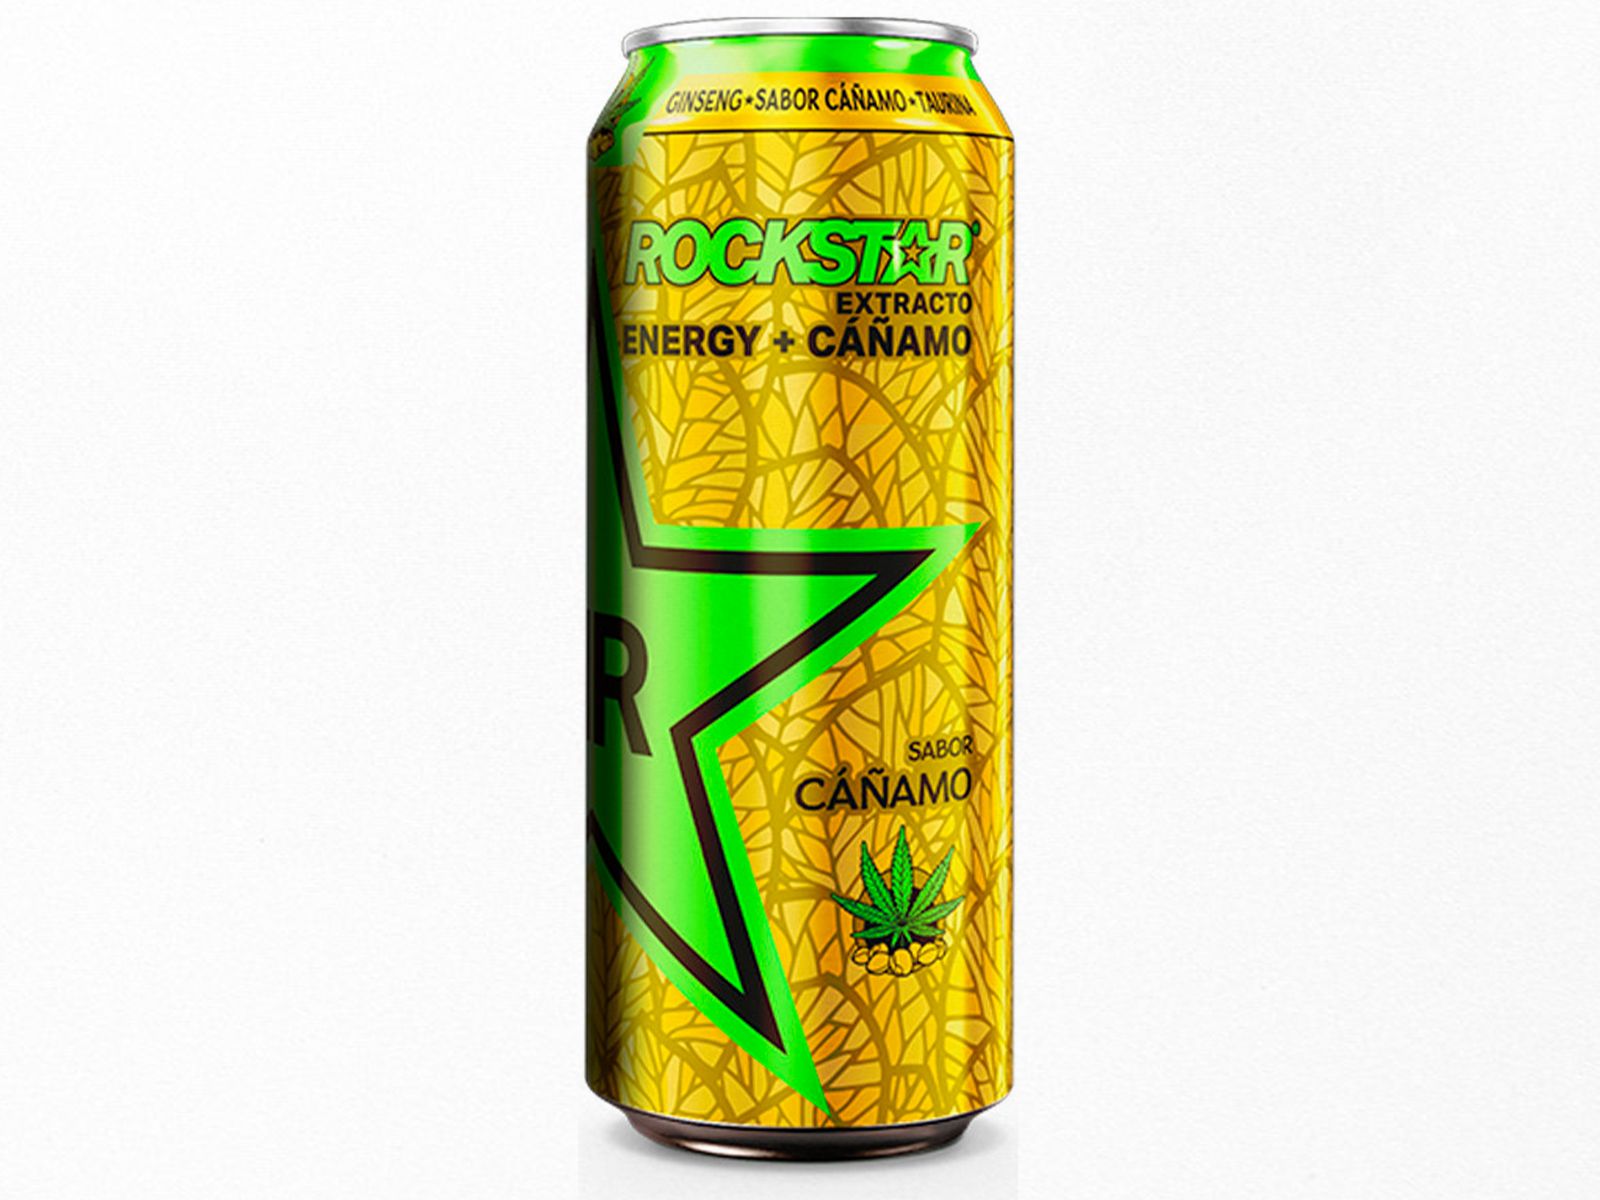 Rockstar® Energy Drink lanza su nuevo sabor cáñamo